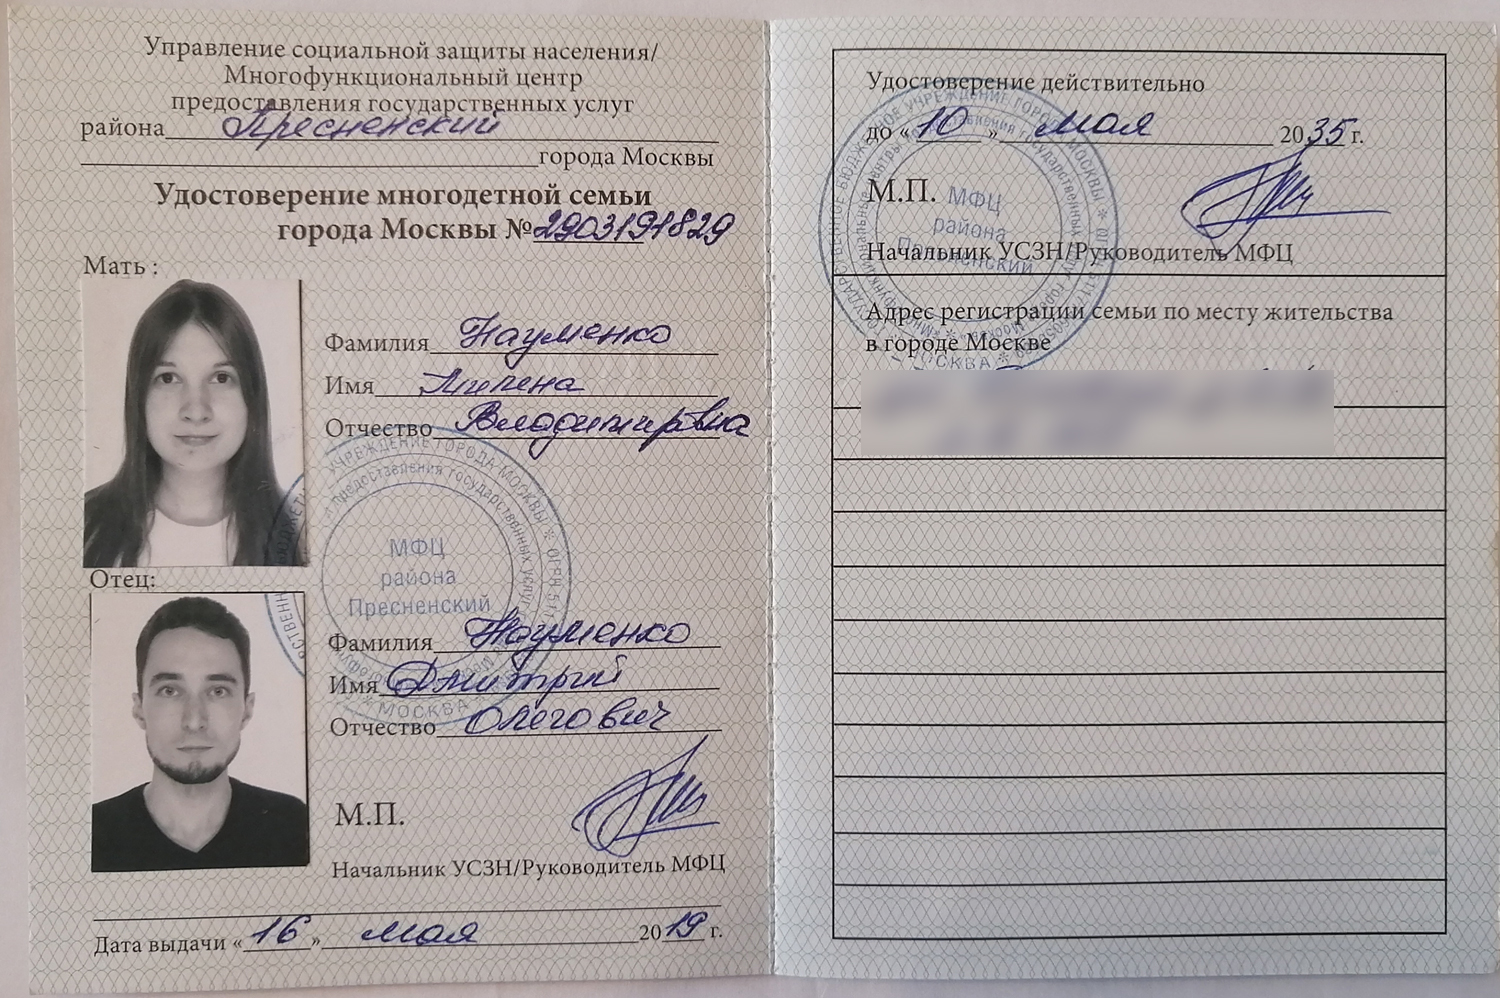 Дмитрий Науменко - удостоверение многодетной семьи